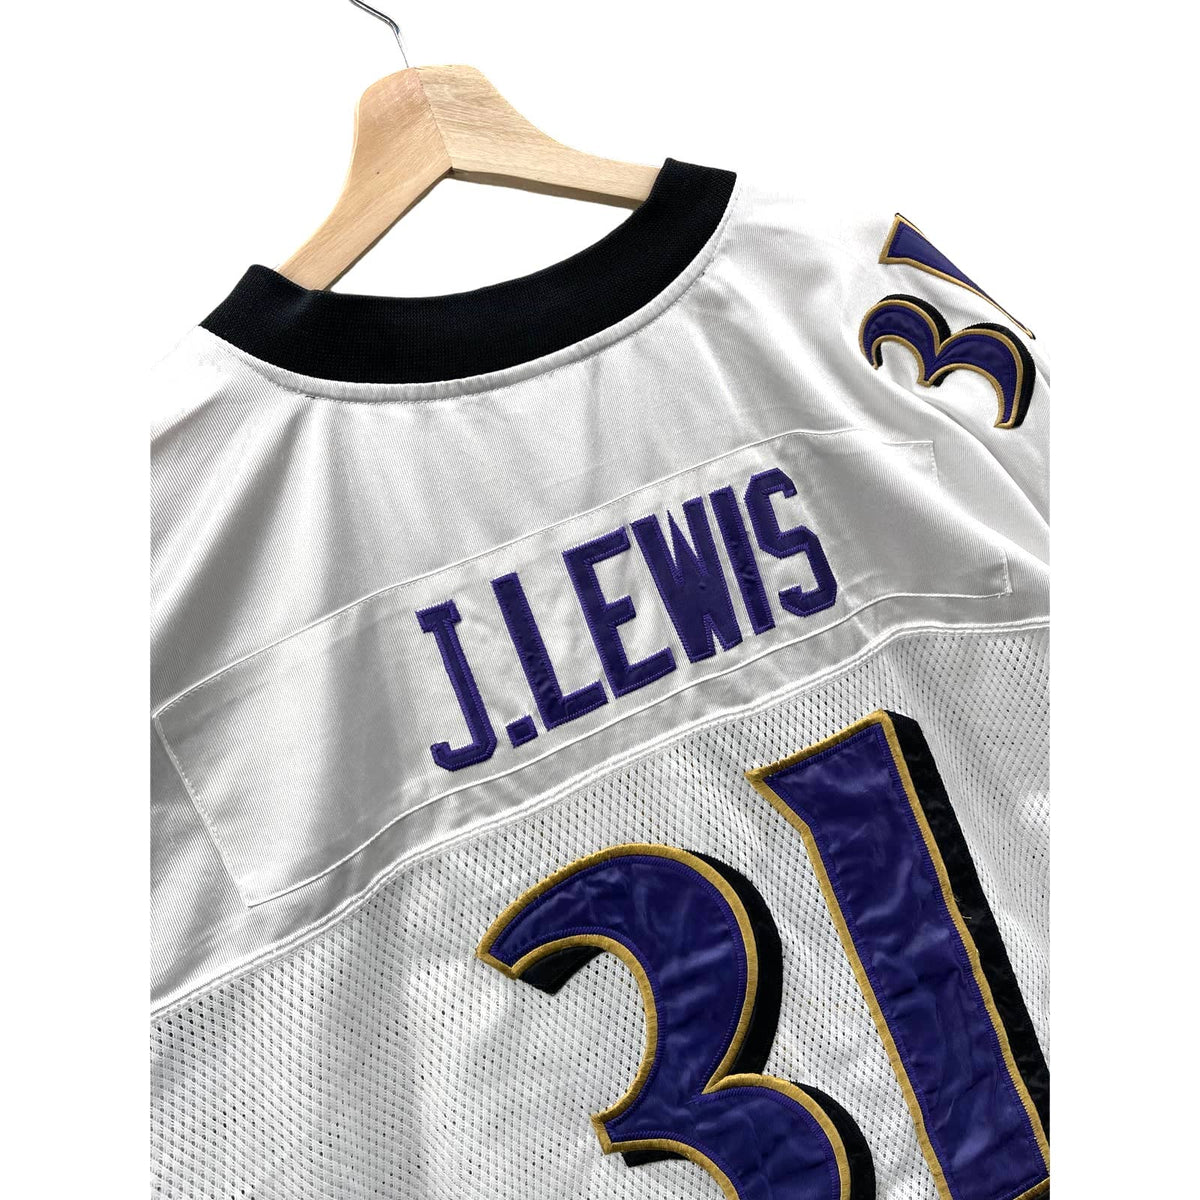 Vintage 2000's Reebok Baltimore Ravens Jamal Lewis NFL Team Jersey